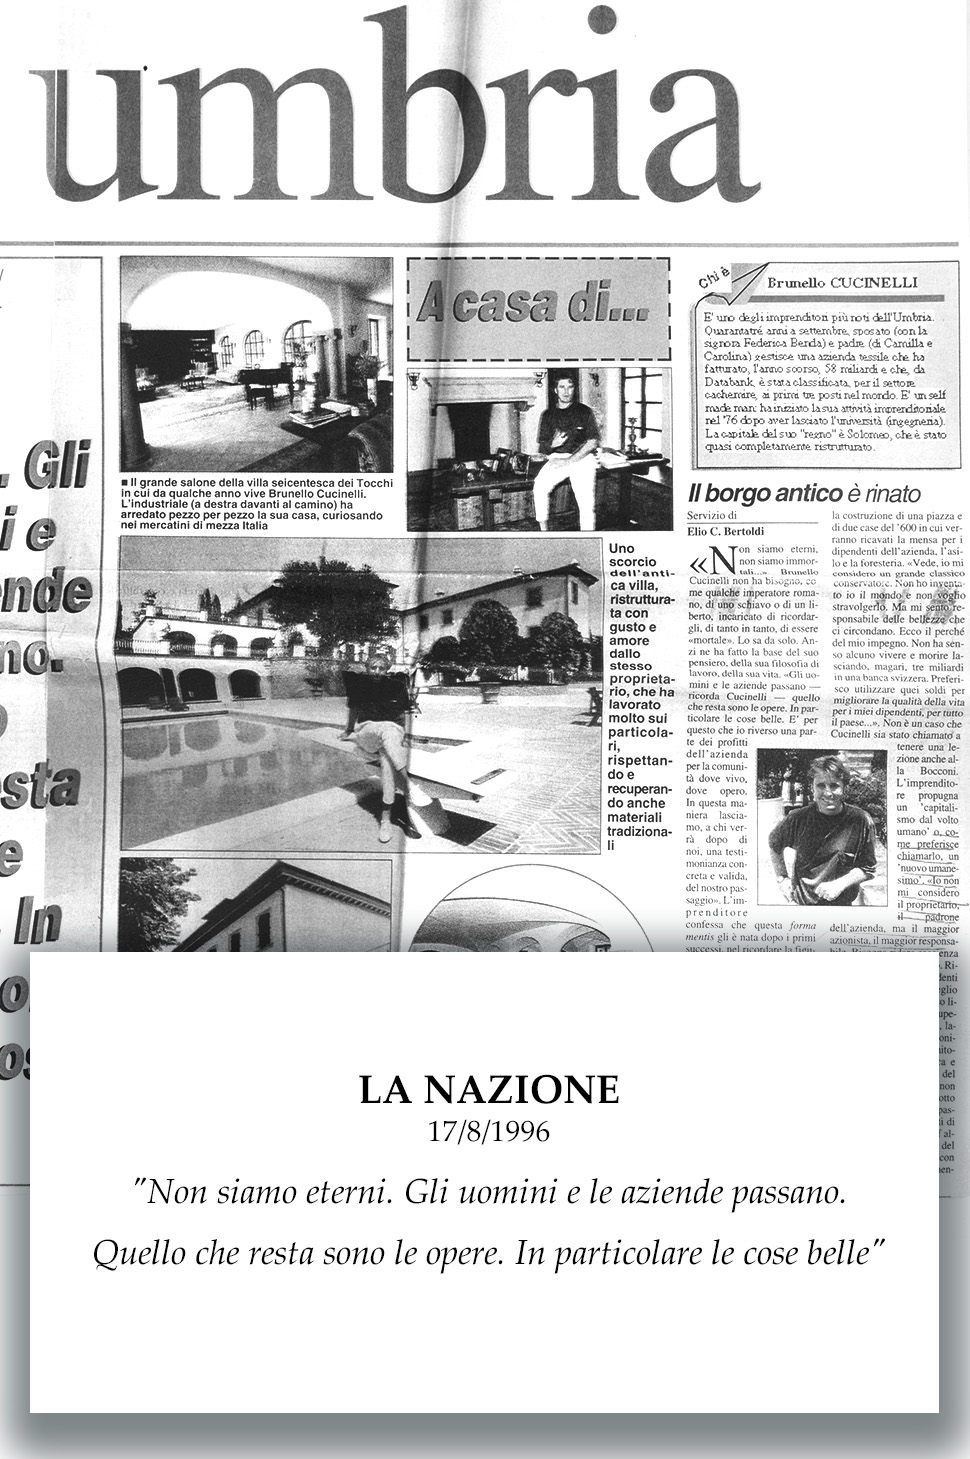 1996 La Nazione